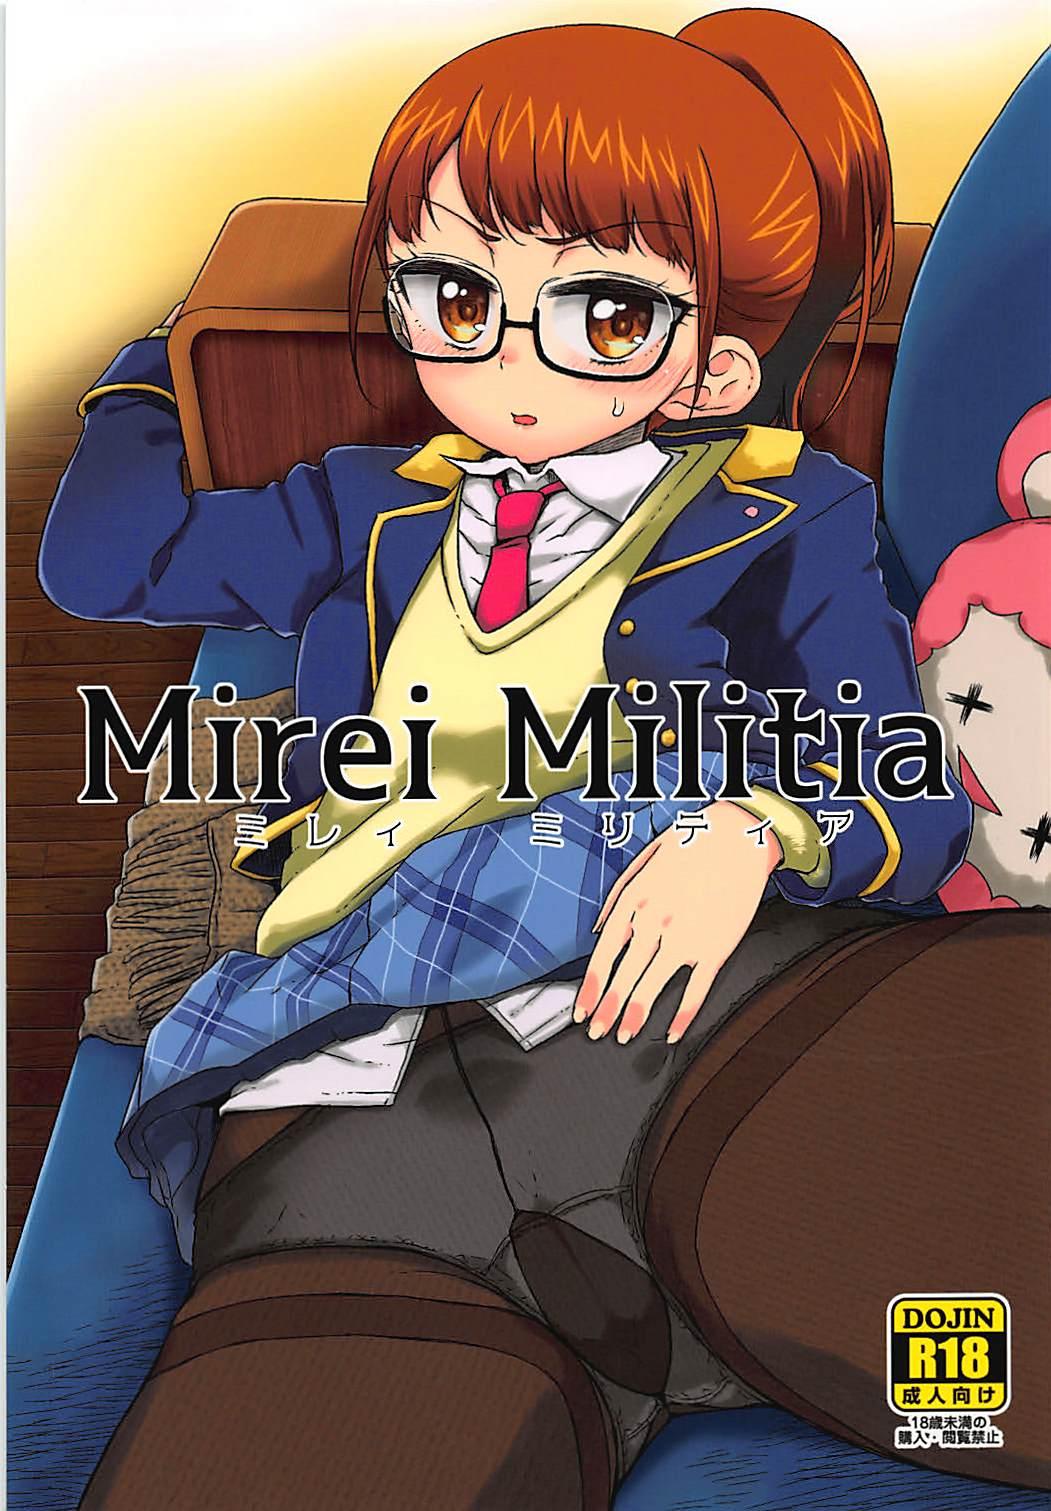 Sexy Mirei Militia - Pripara Price - Picture 1